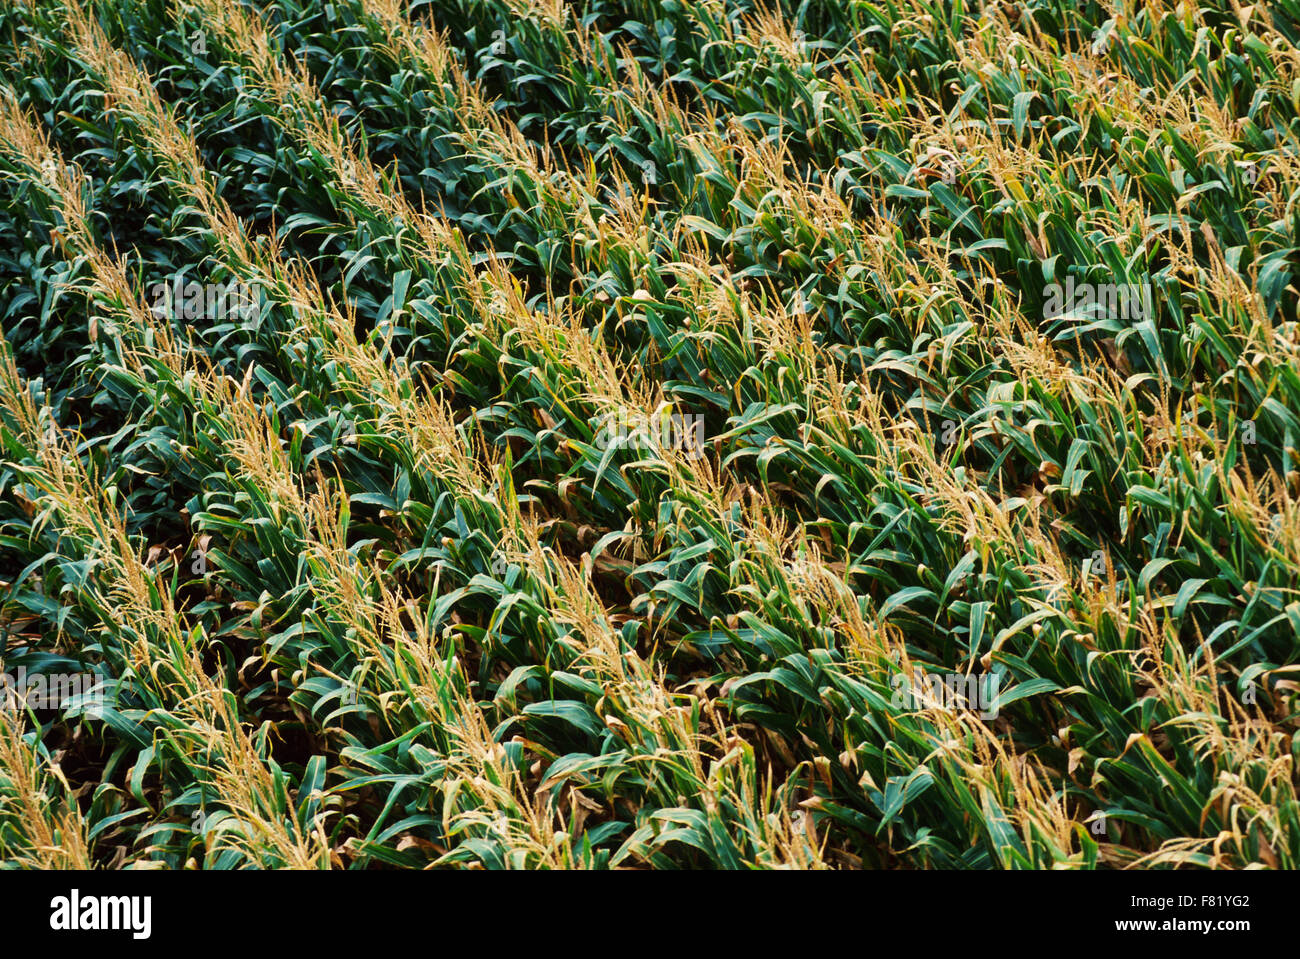 Photographie aérienne d'un champ de maïs à maturité. Banque D'Images